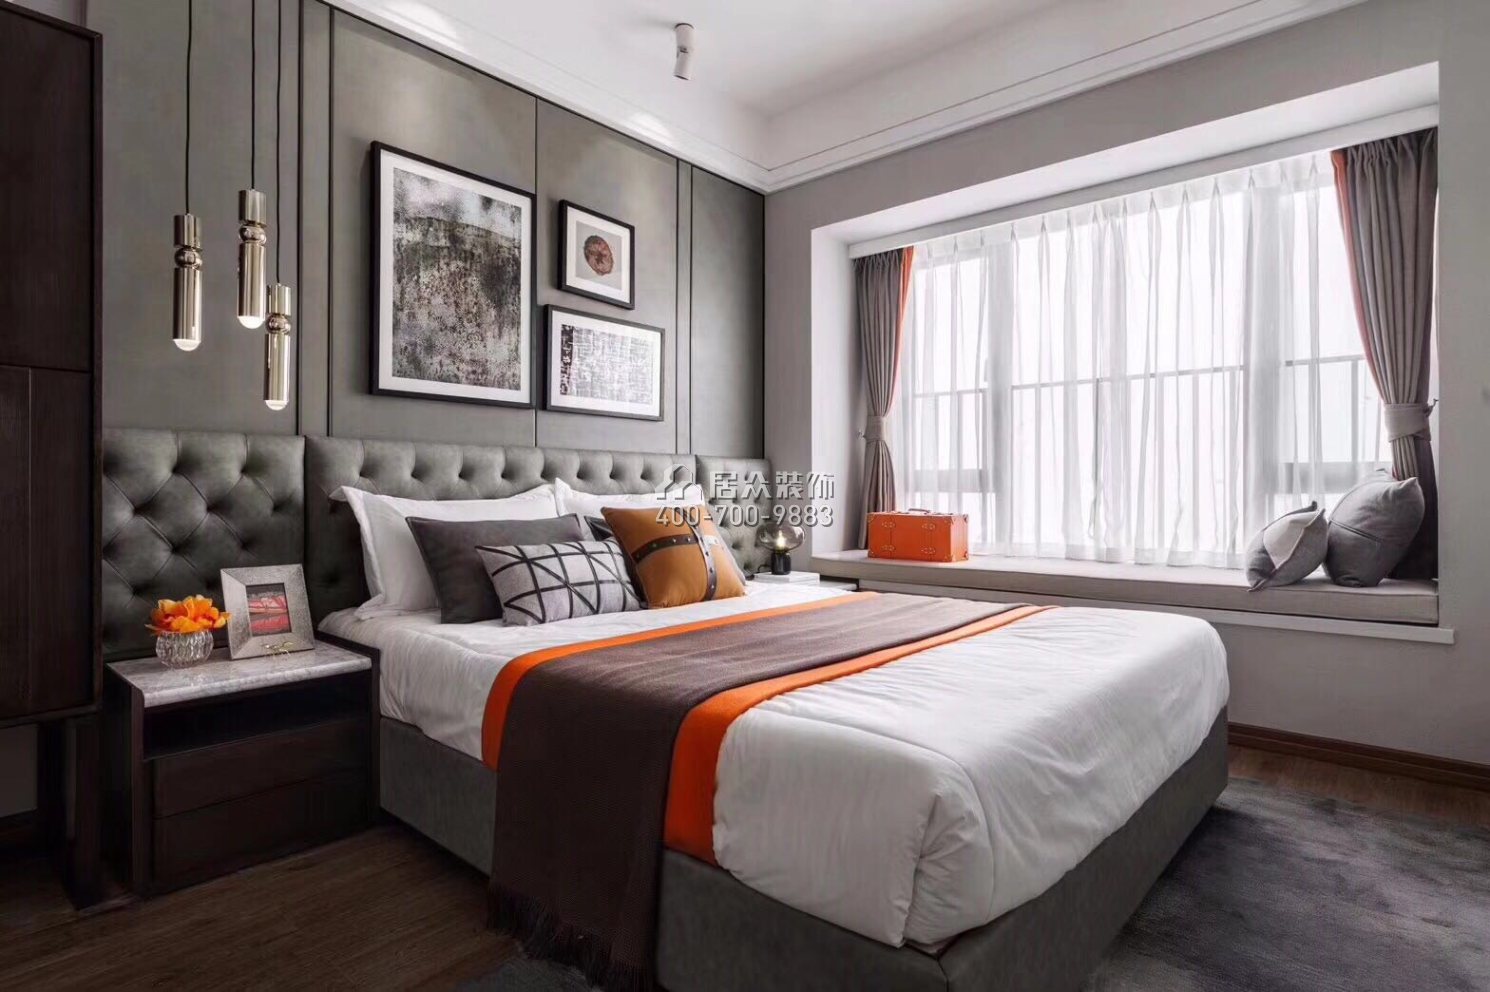 京基滨河时代广场120平方米现代简约风格平层户型卧室装修效果图